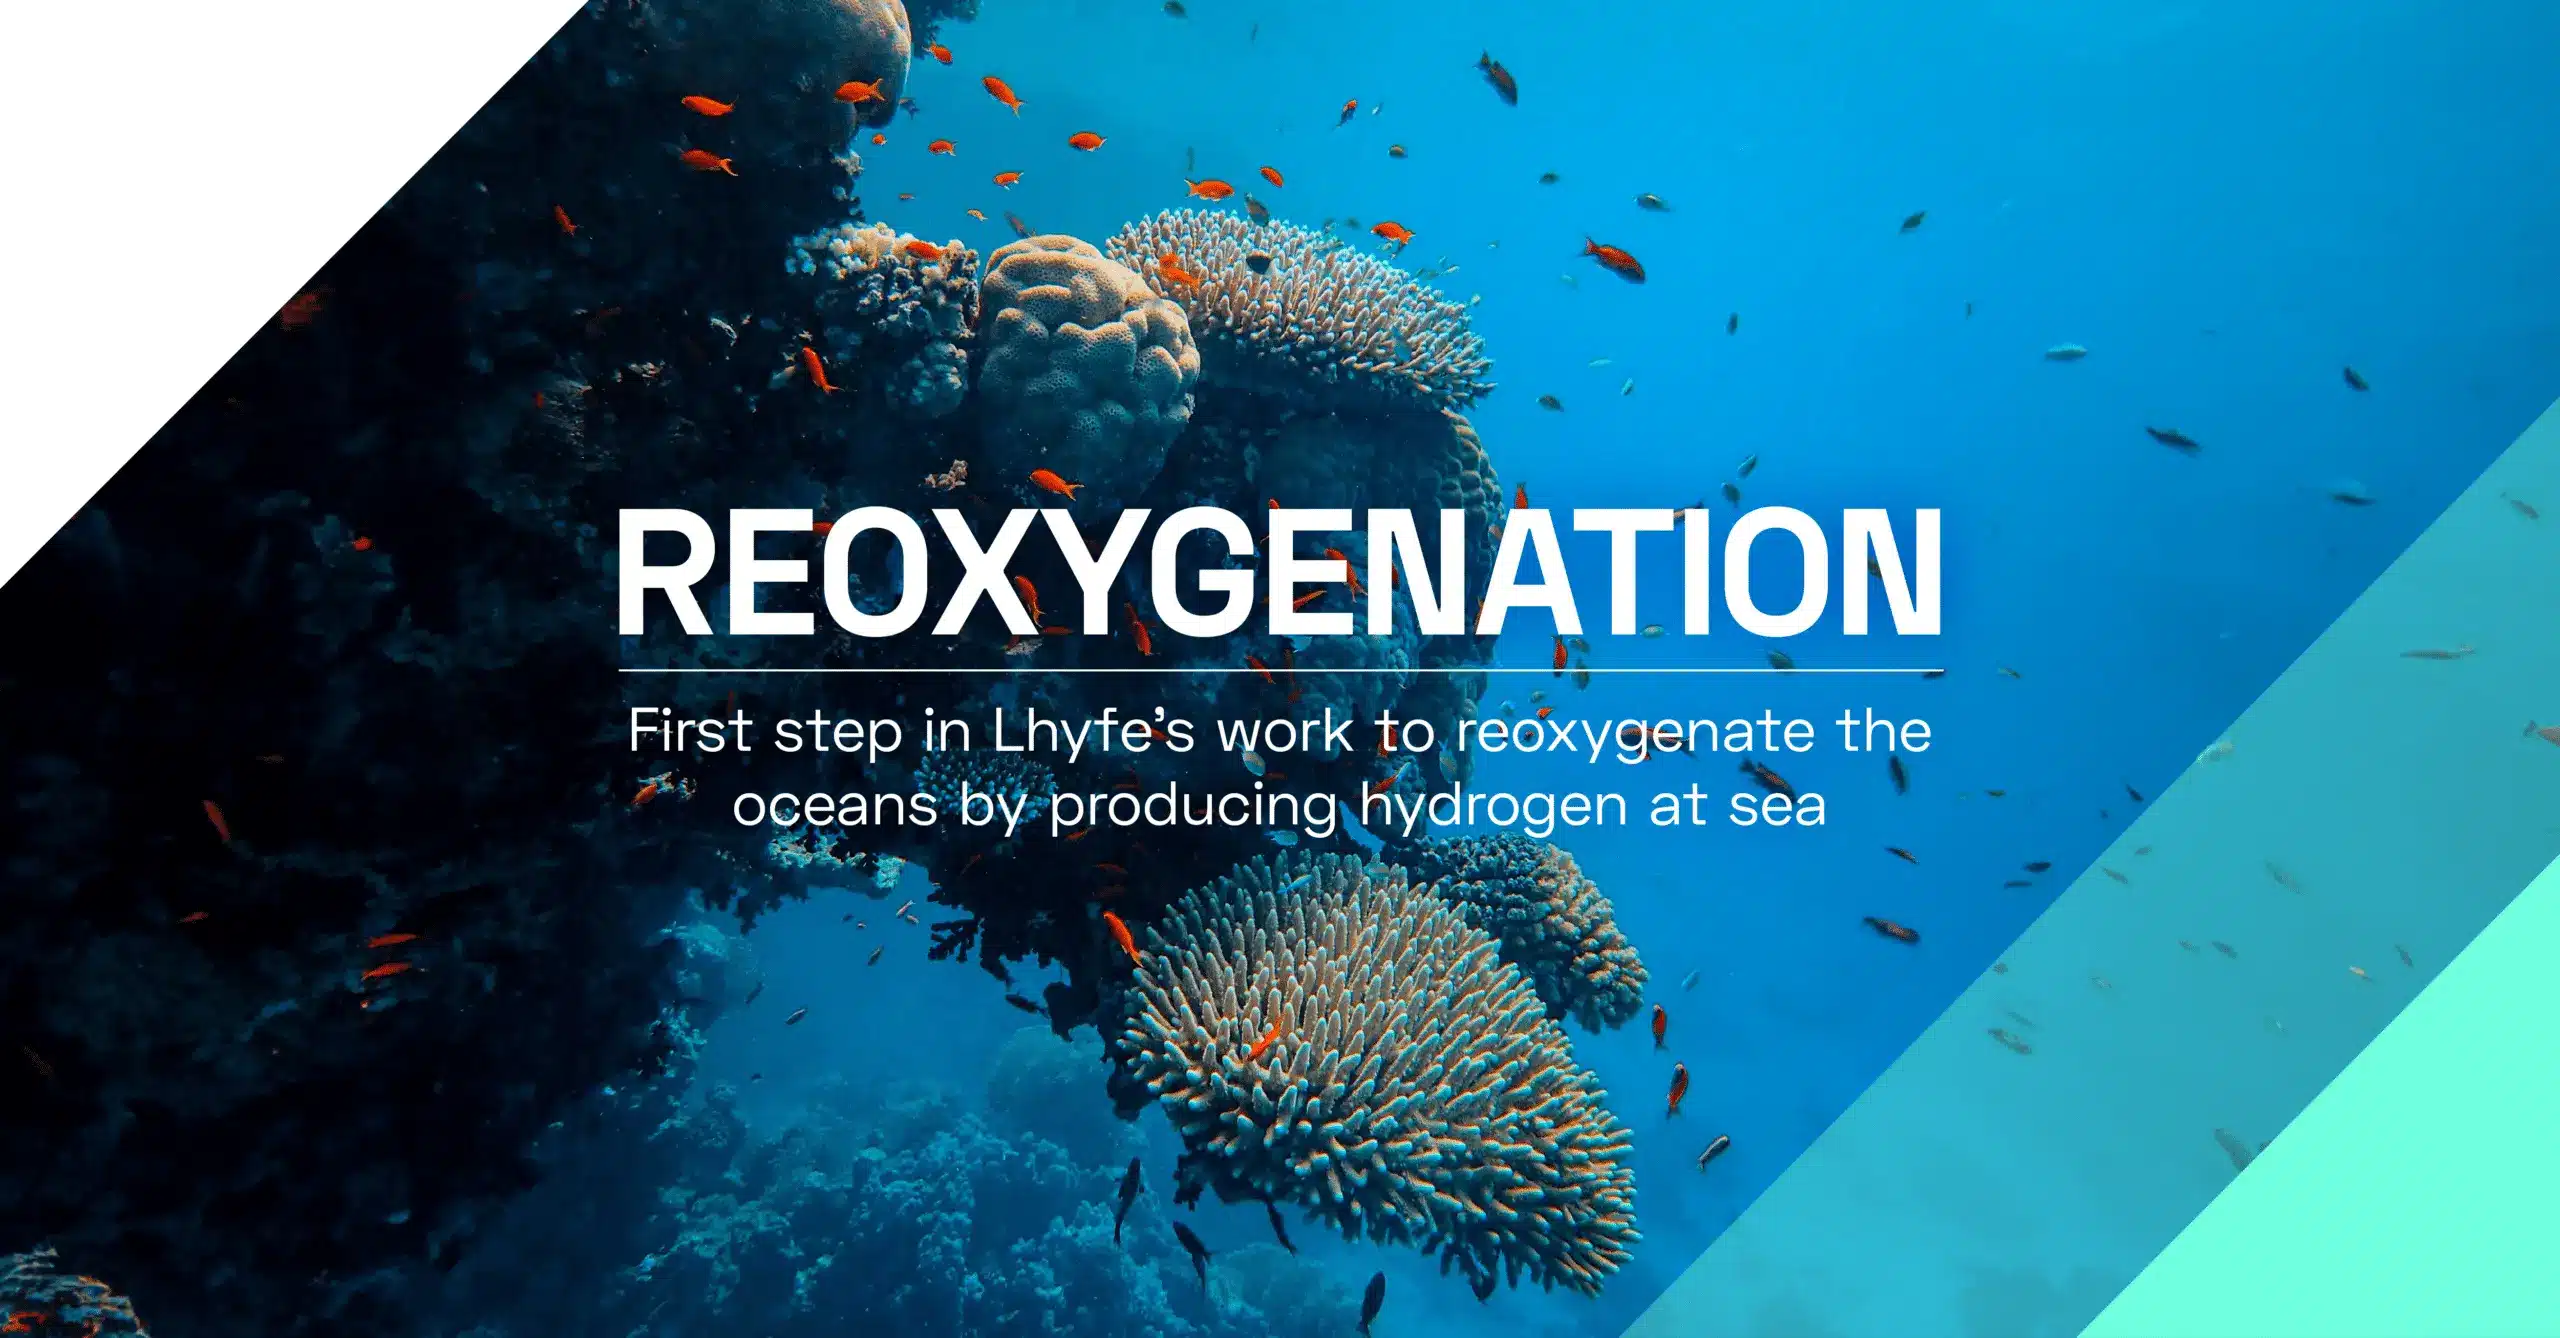 ¡Lhyfe completa un primer paso en su trabajo para reoxigenar los océanos!